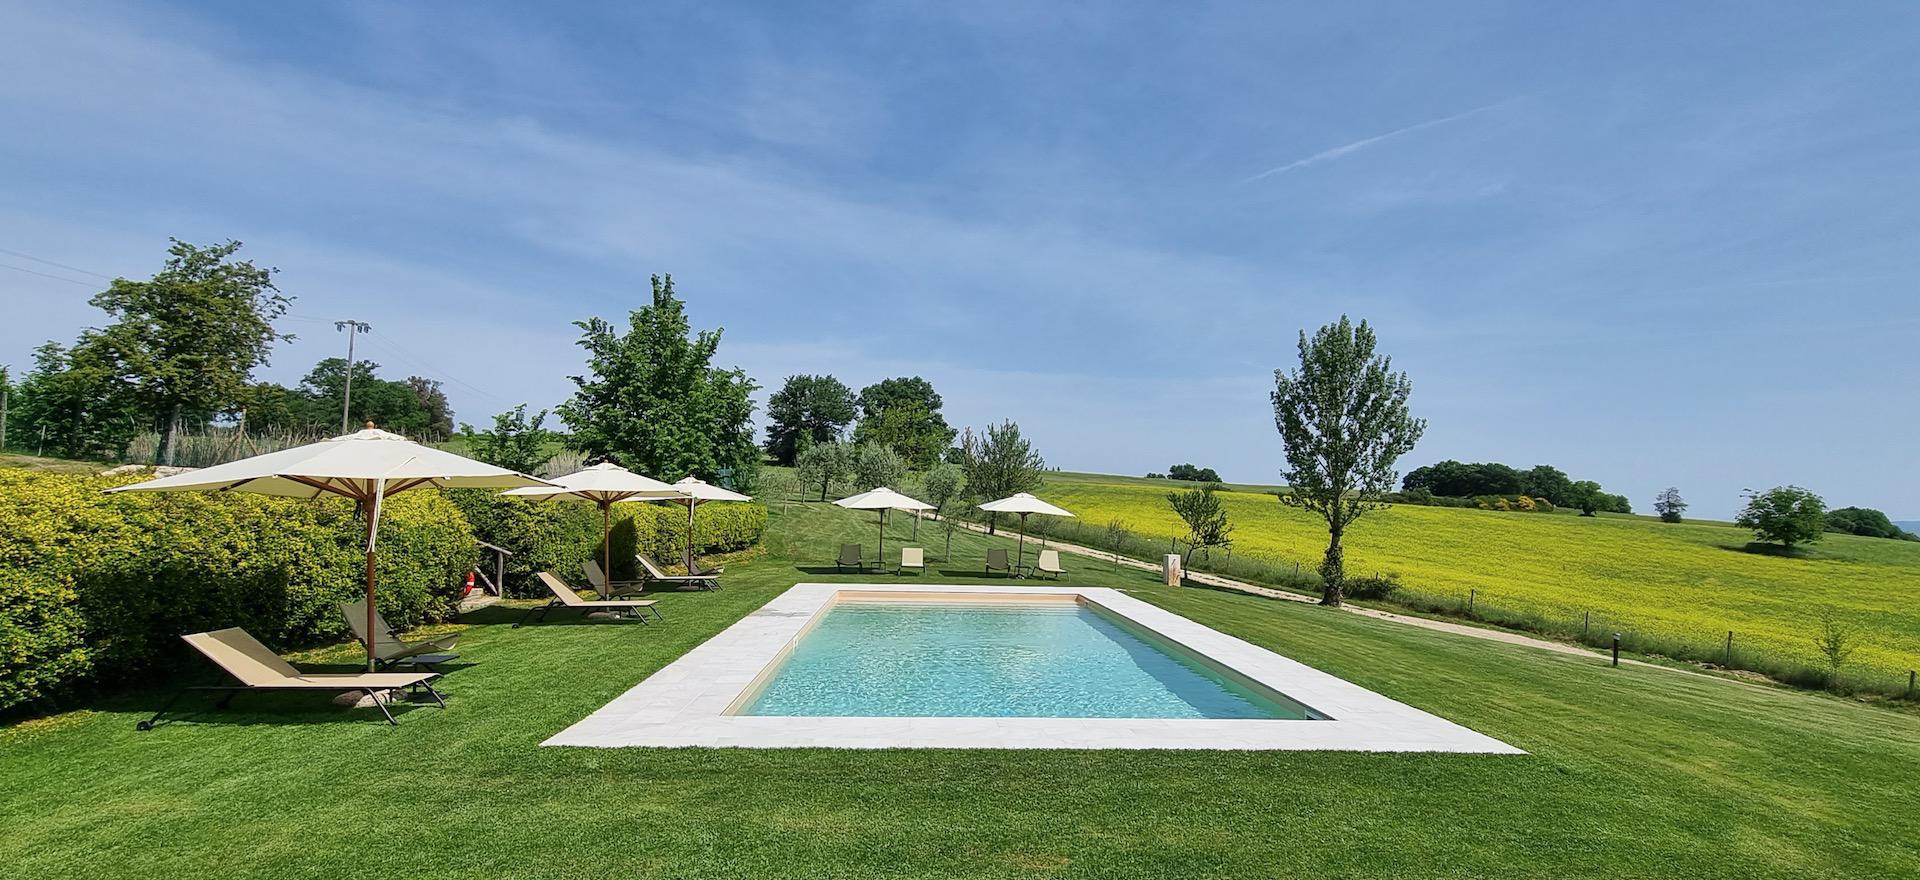 Agriturismo Toskana Appartements in der Nähe von Siena mit Pool und großem Spielfeld | myitalyselection.de